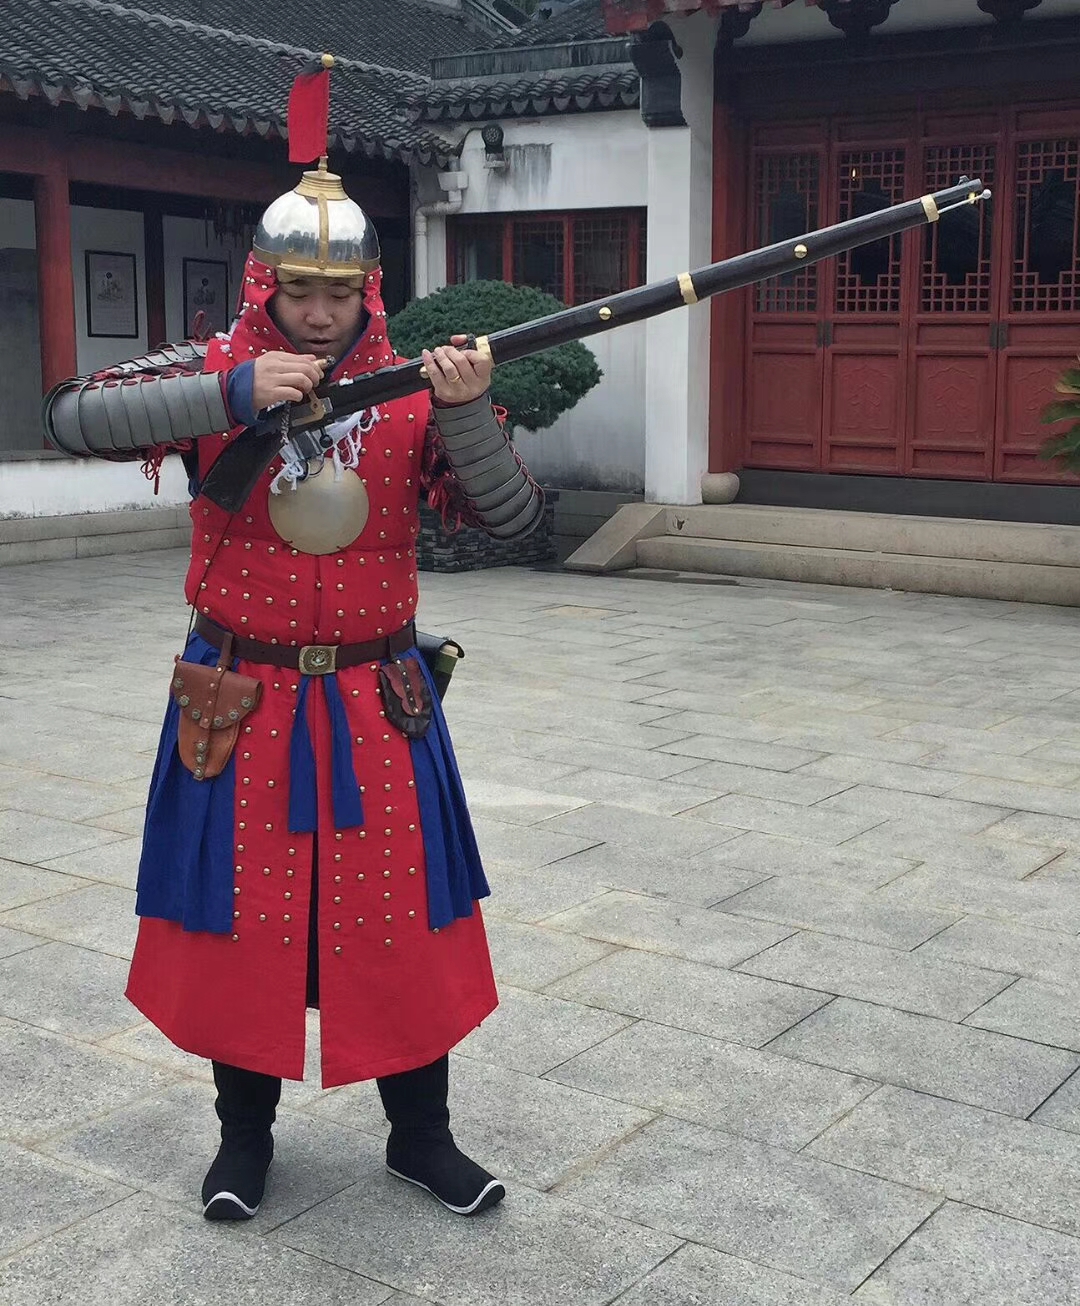 历史爱好者自制道具复原的明朝军队十六世纪火枪士兵演武步骤